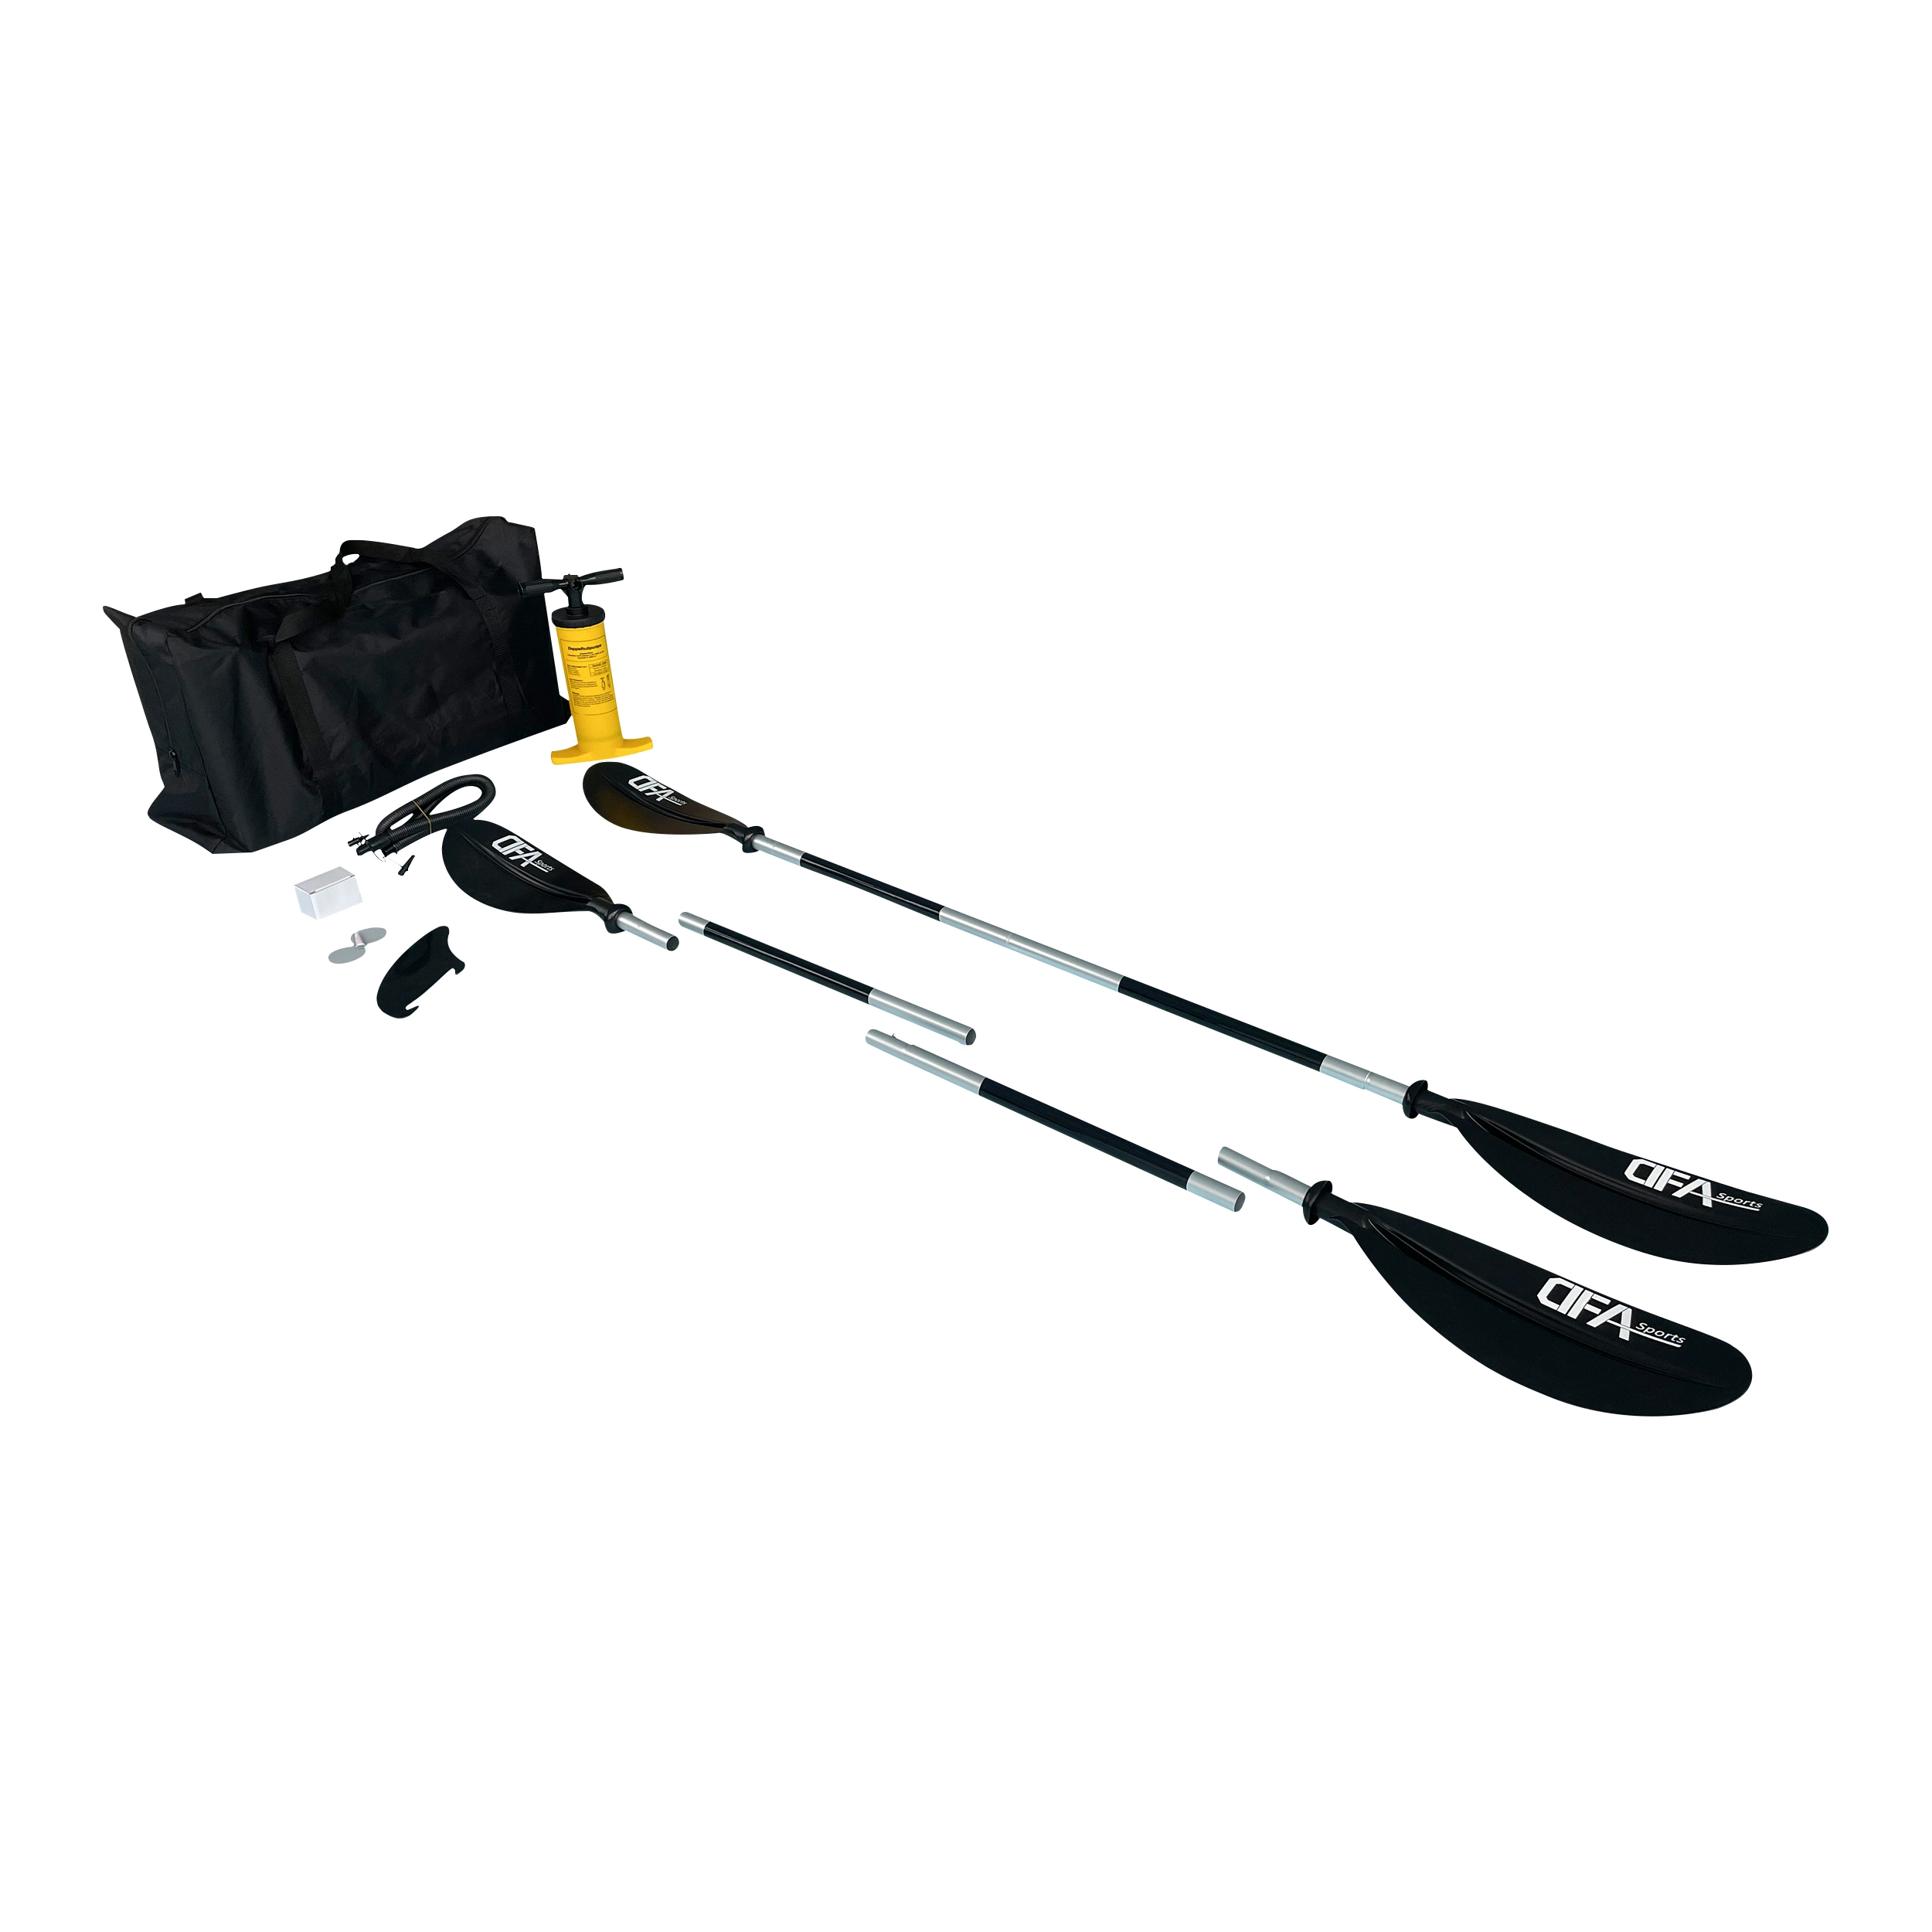 Dfaspo Inflatable Kayak Paddle / Bag/ Air Pump Kayak Accessories